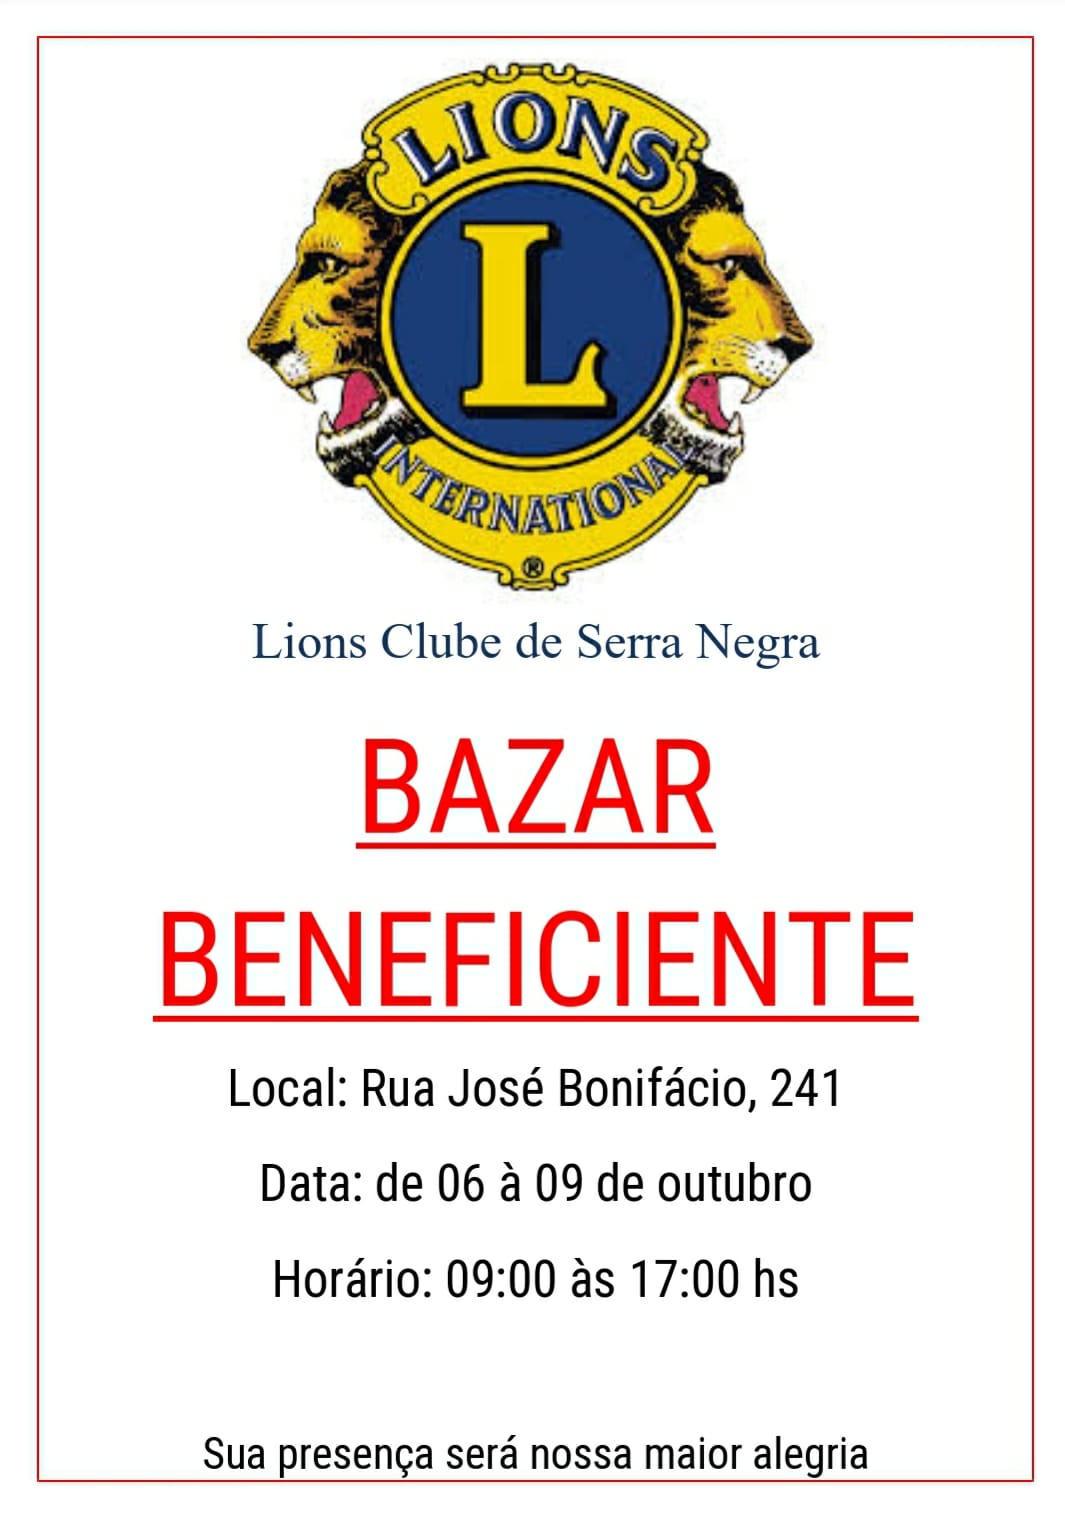 Lions Clube de Serra Negra realiza bazar beneficente até sábado